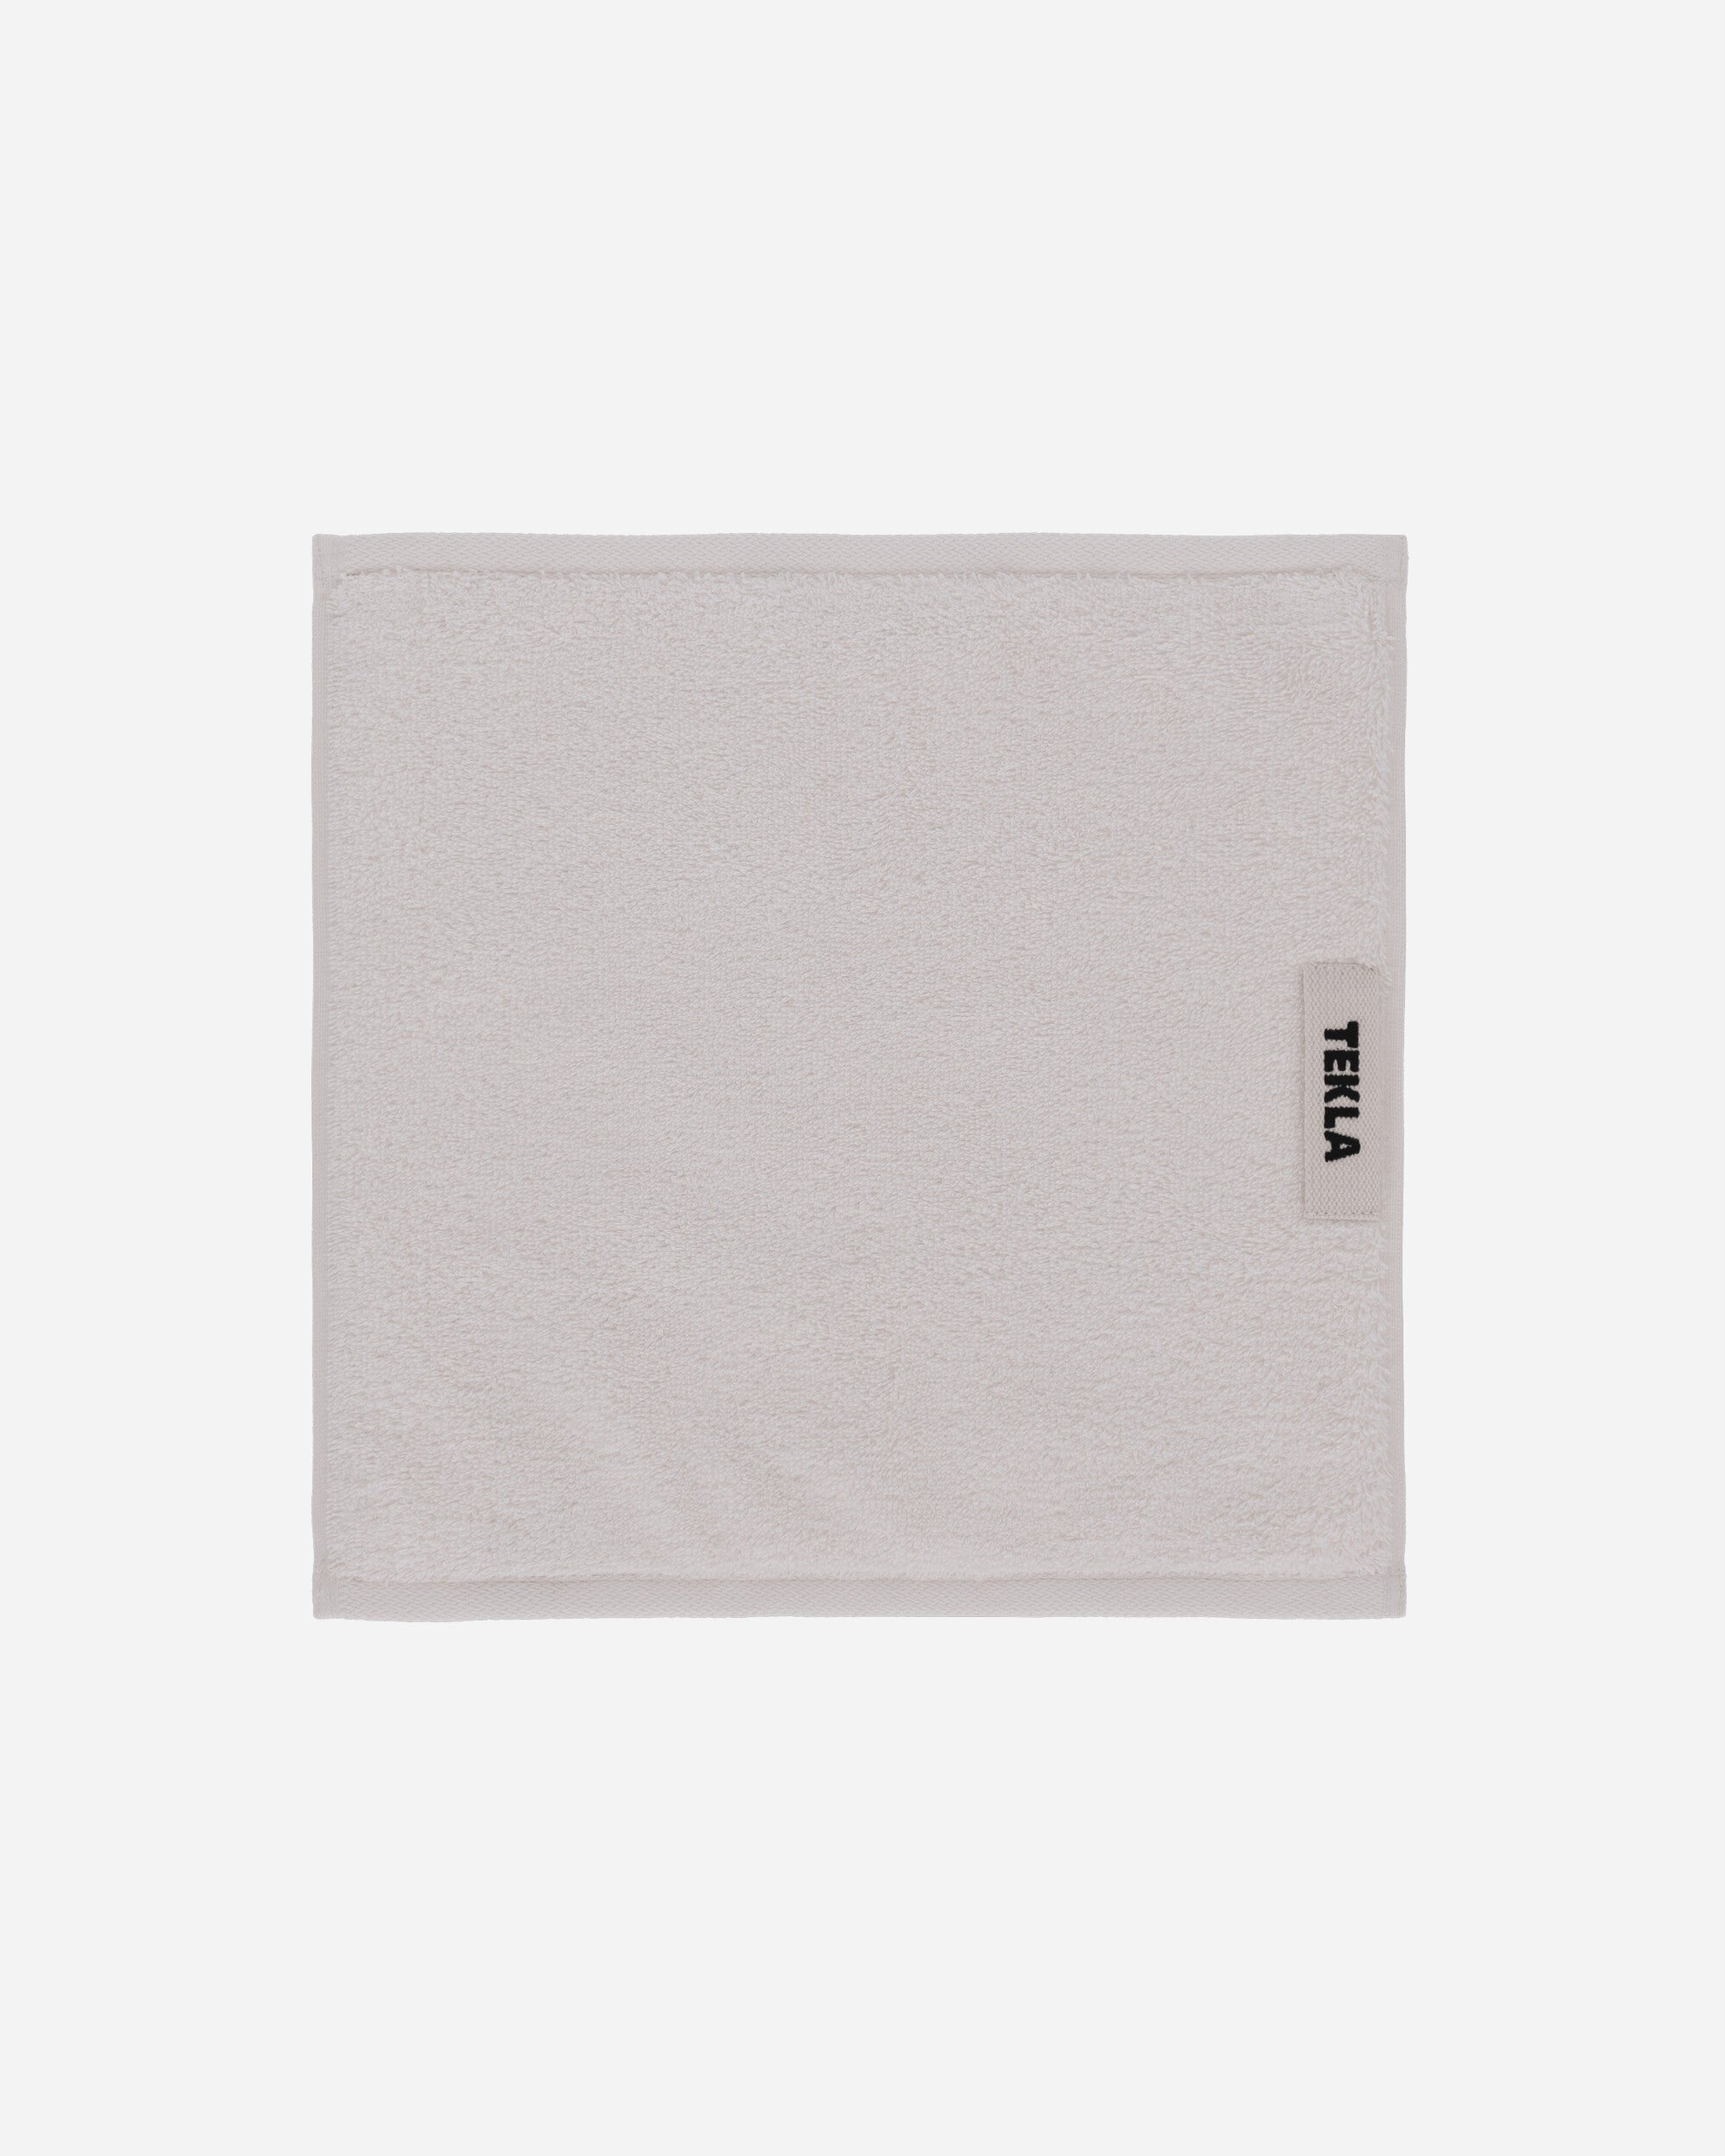 Tekla Terry Towel 30X30 Ivory Textile Bath Towels TT-30x30 IV